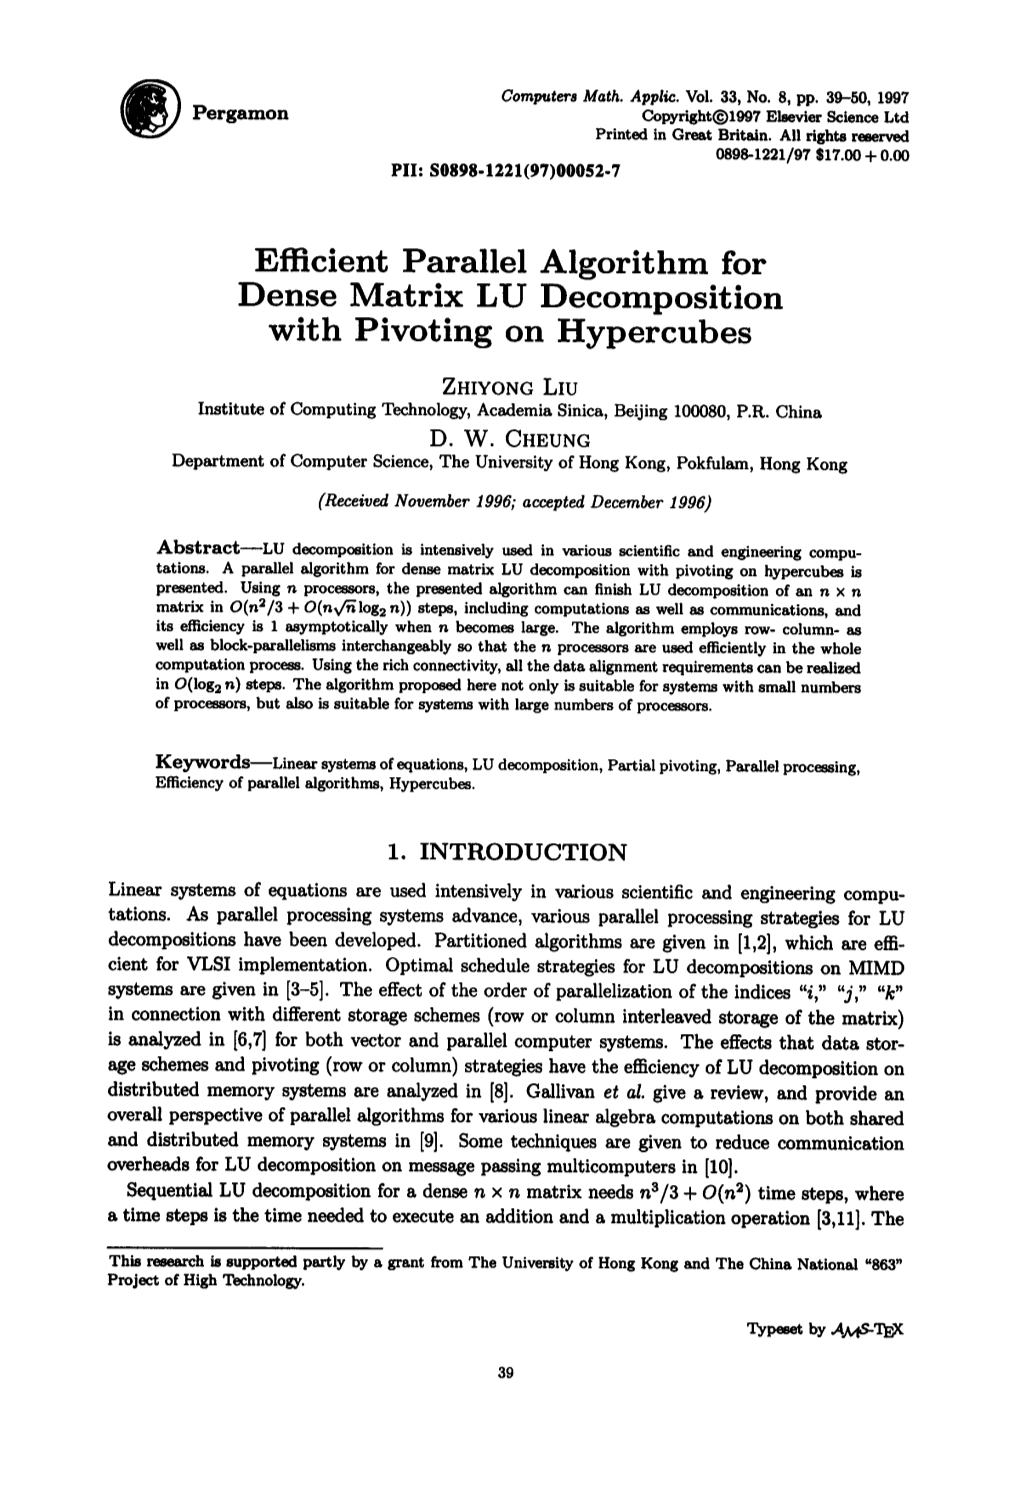 Efficient Parallel Algorithm for Dense Matrix LU Decomposition with Pivoting on Hypercubes